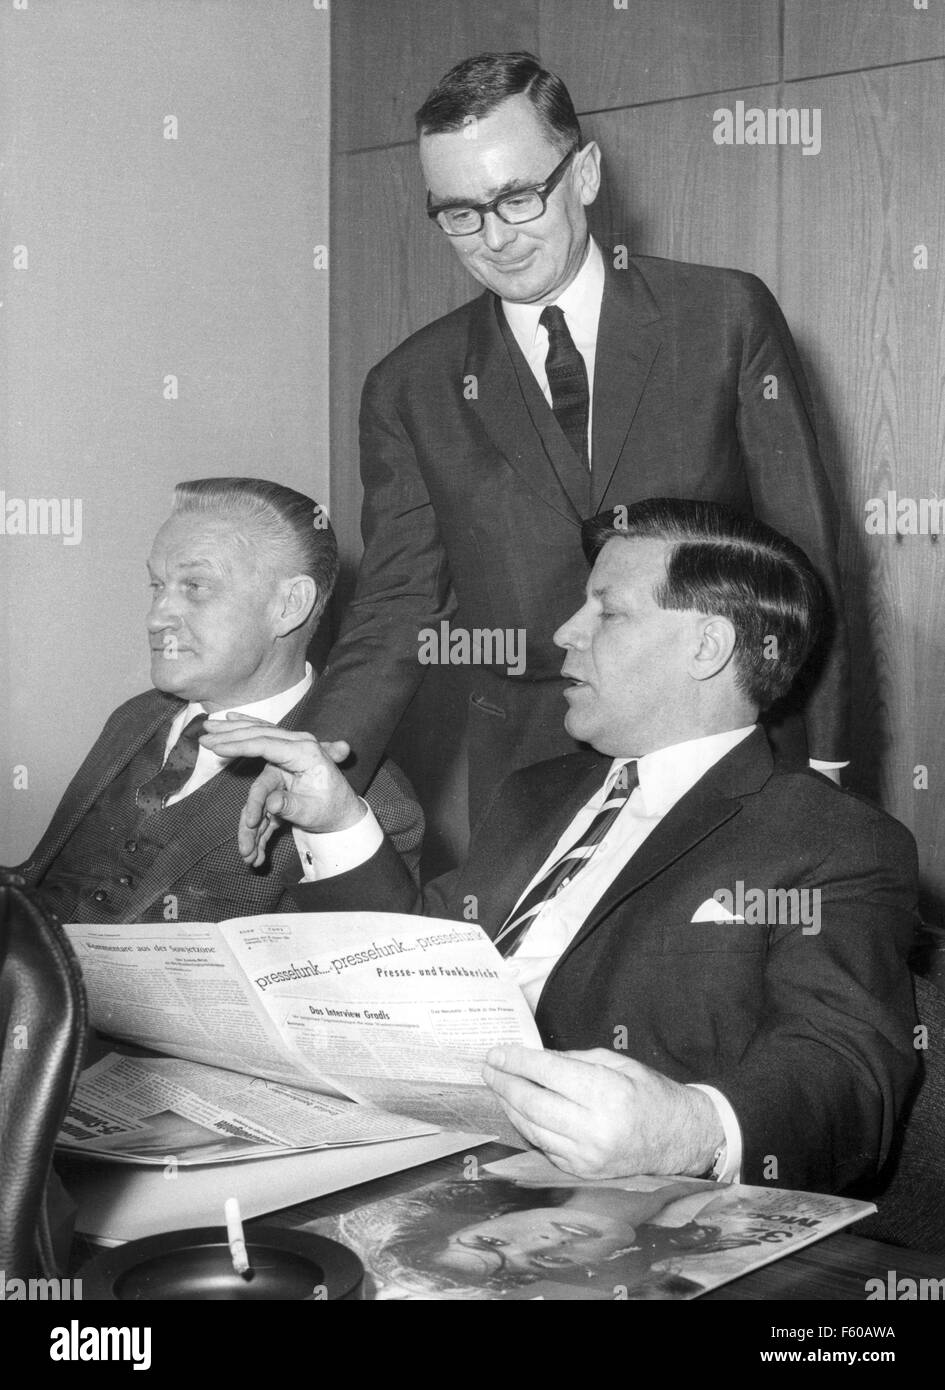 Alex Möller (L), Helmut Schmidt (R), et le Professeur Karl Schiller (retour) au cours d'une réunion de la faction Bundestag SPD le 18 janvier 1966 dans l'aile sud du bâtiment du Reichstag à Berlin. Banque D'Images